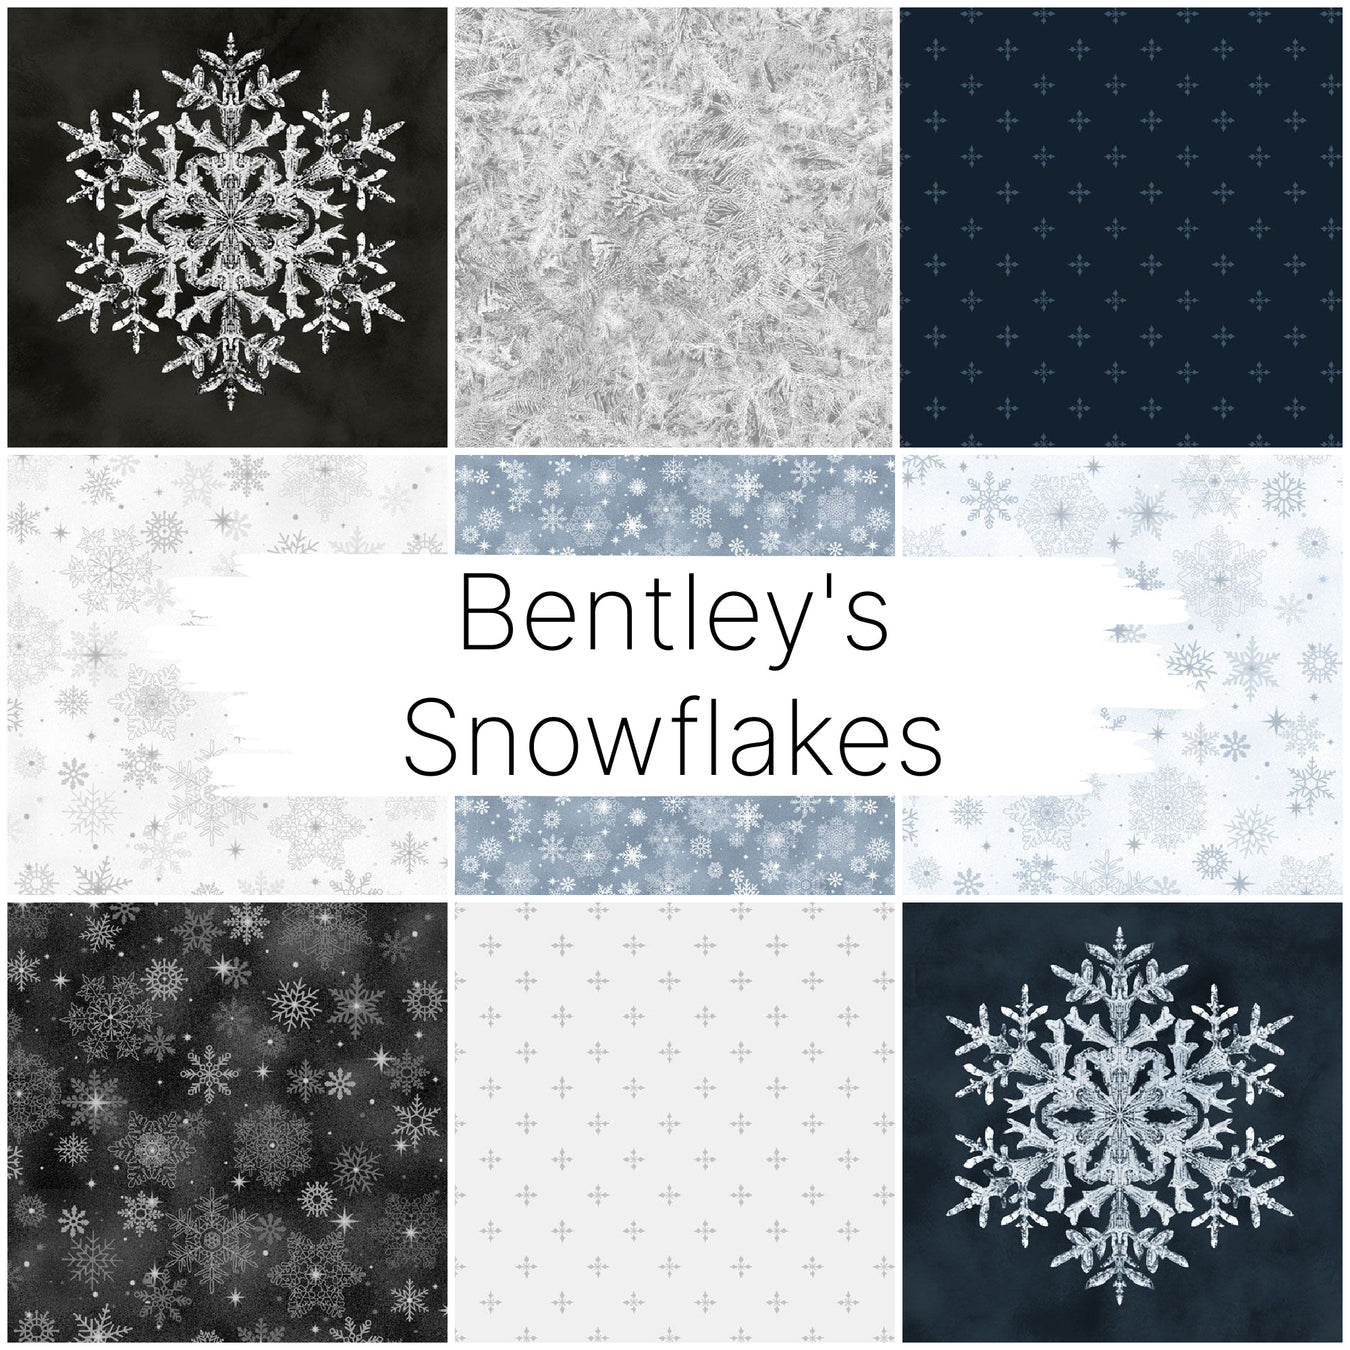 Bentley's Snowflakes